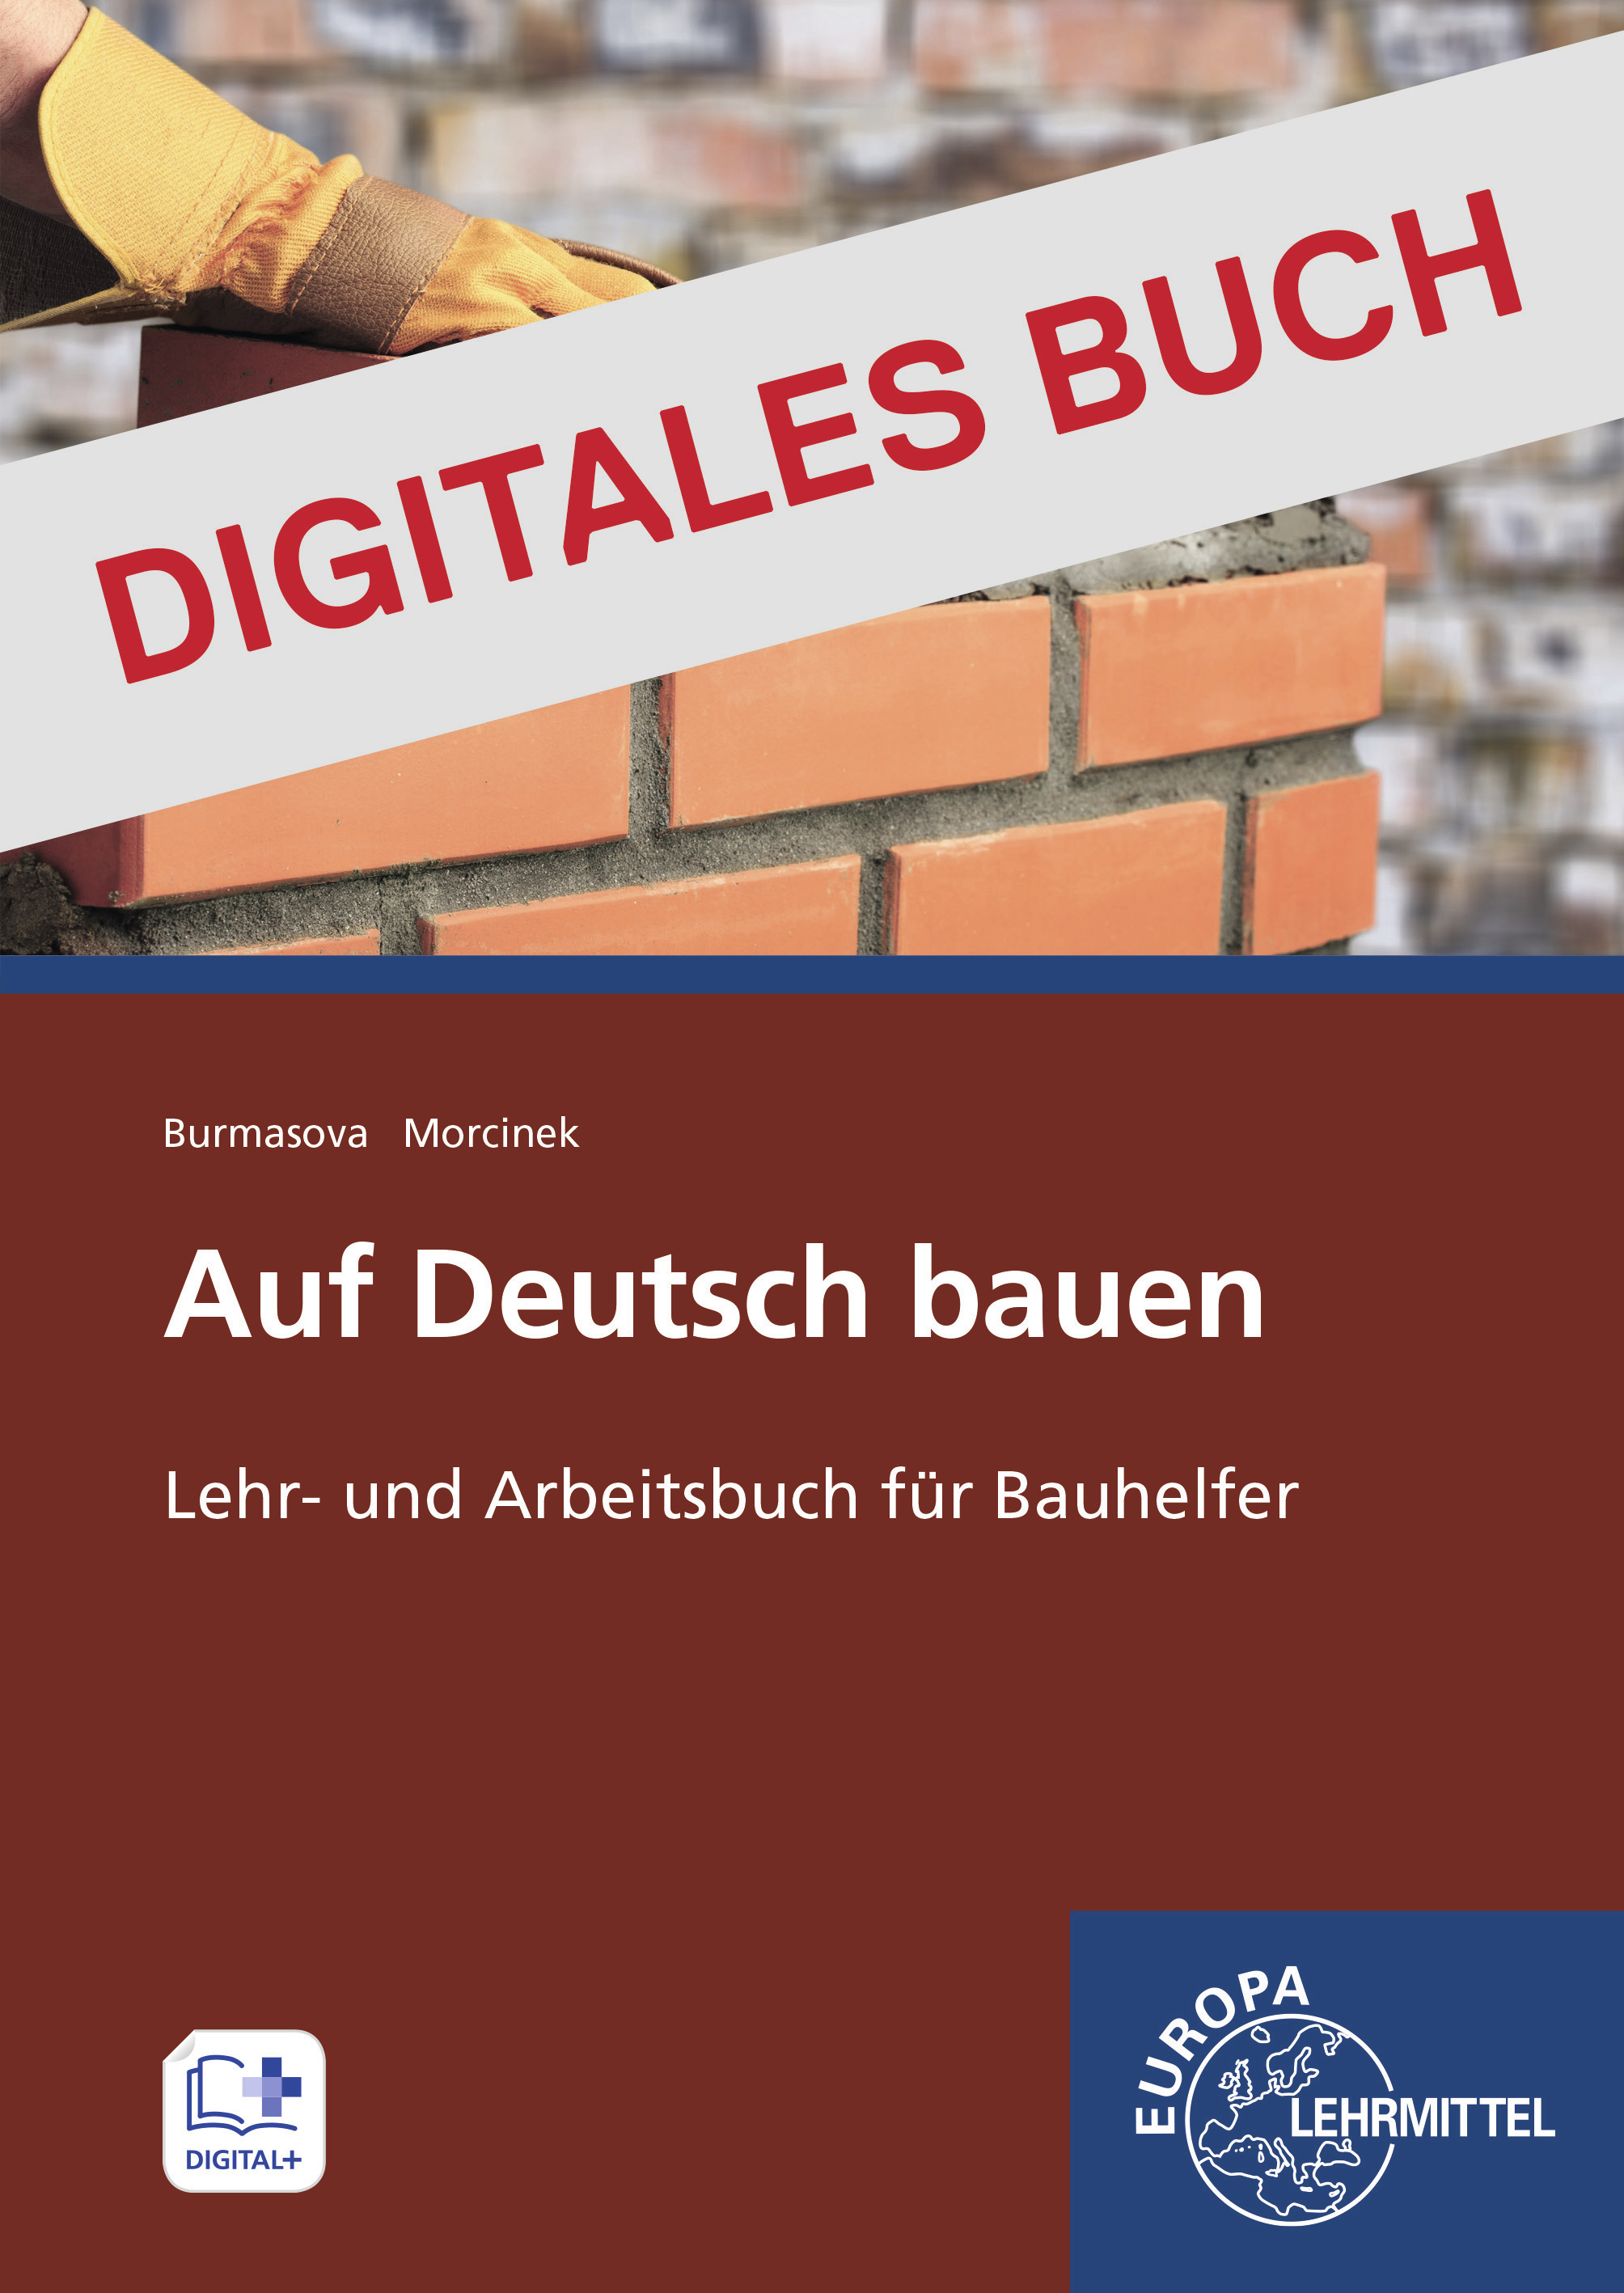 Auf Deutsch bauen - Lehr- und Arbeitsheft für Bauhelfer - Digitales Buch